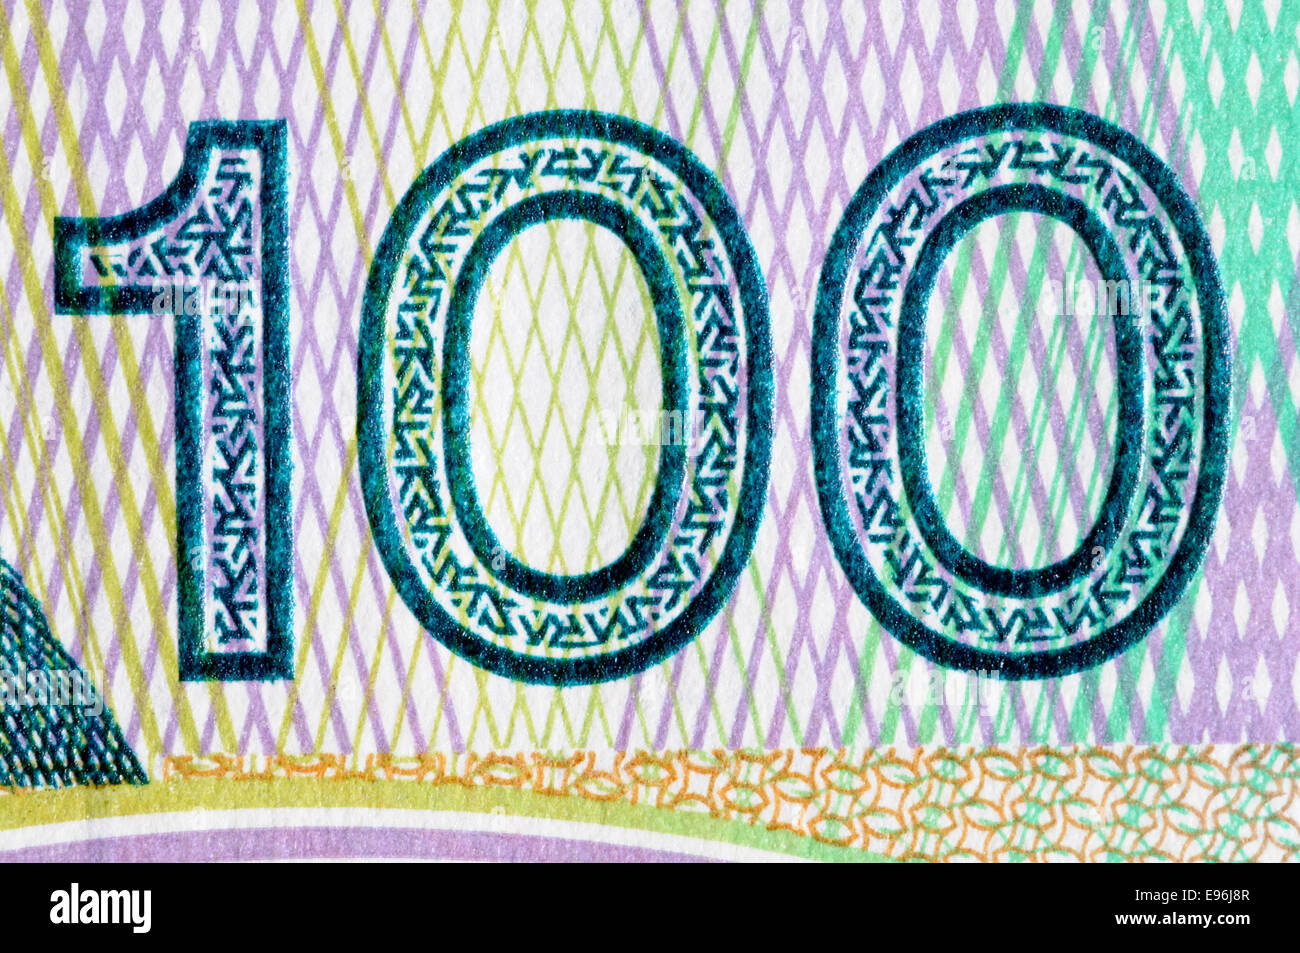 Détail d'un dinar croate 1993 Billet de 100 000 anti-contrefaçon de l'impression de sécurité Banque D'Images